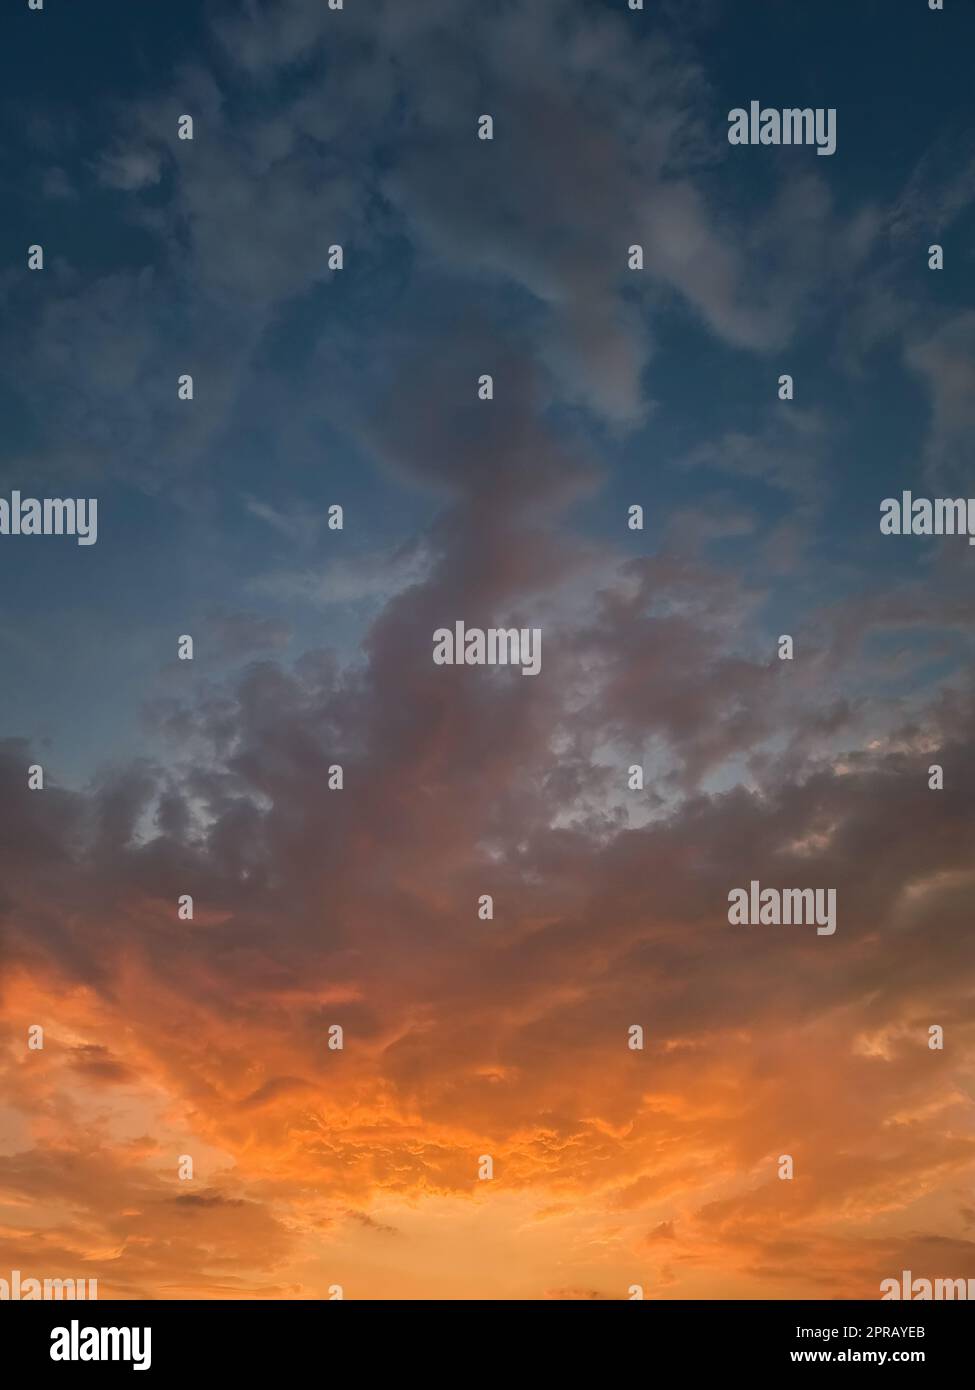 Magnifique ciel de coucher de soleil avec des nuages orange colorés au-dessus de l'horizon, fond céleste vertical Banque D'Images